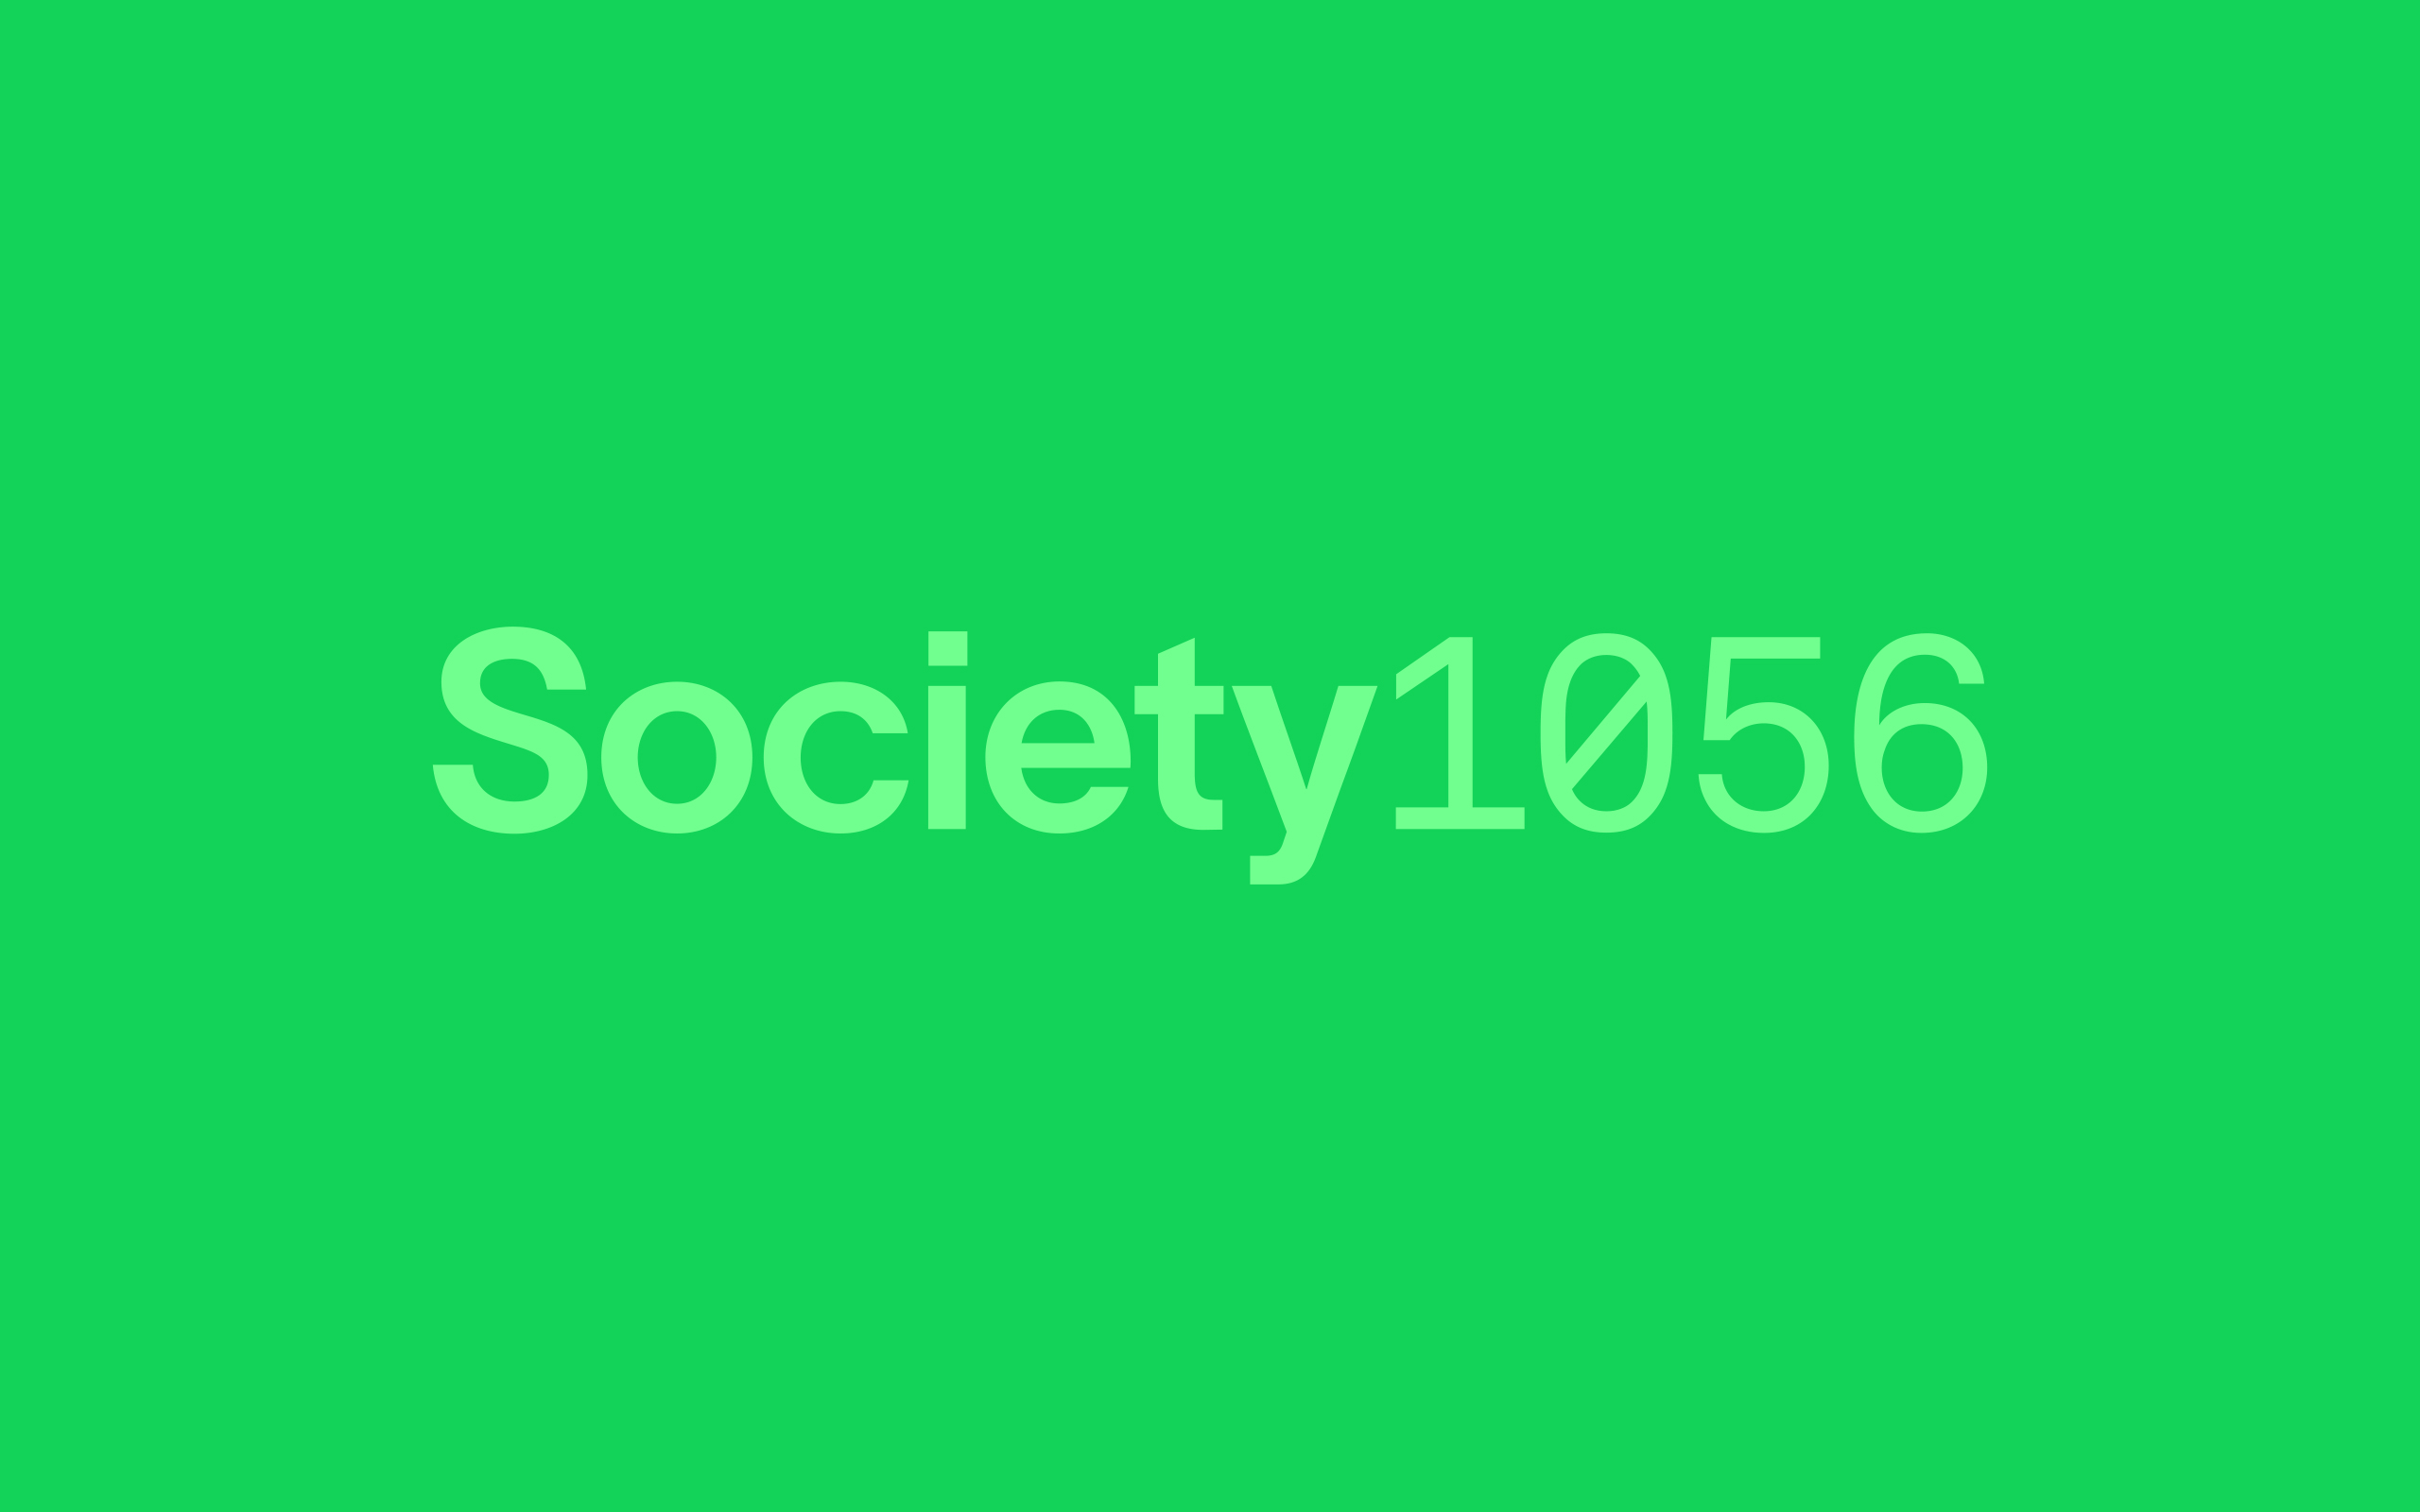 Society23